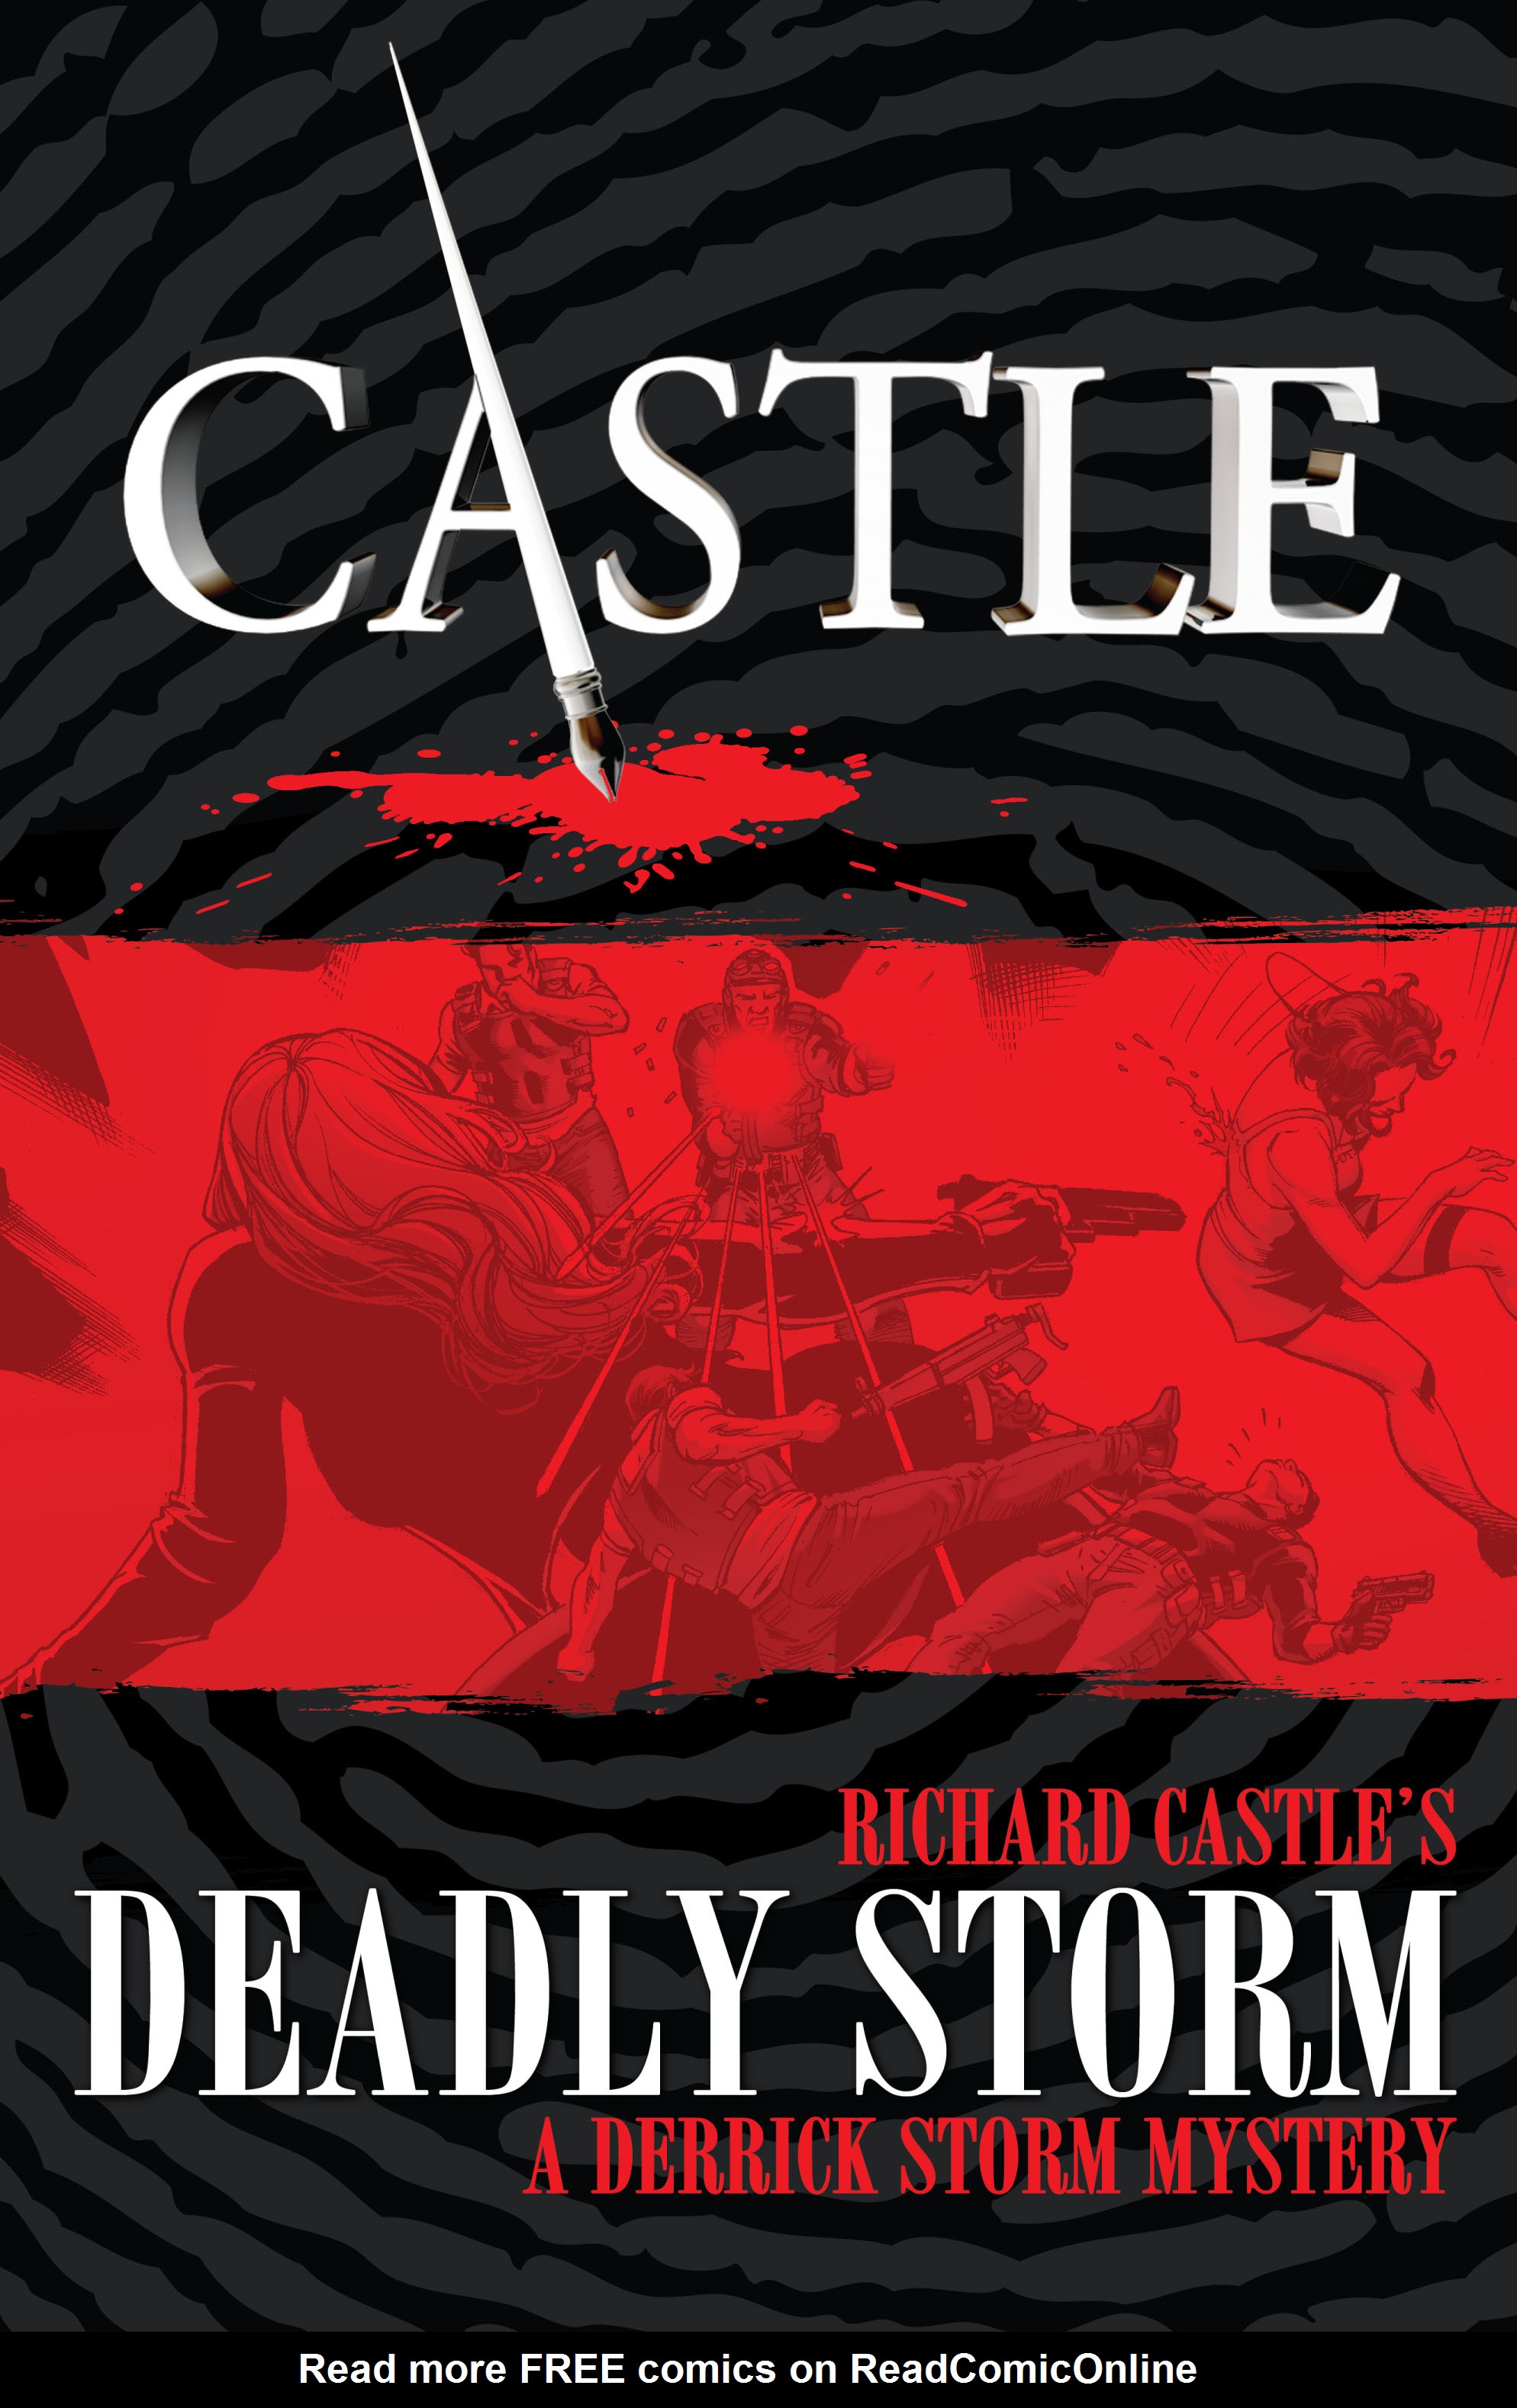 Castle: Richard Castles Deadly Storm TPB Page 1